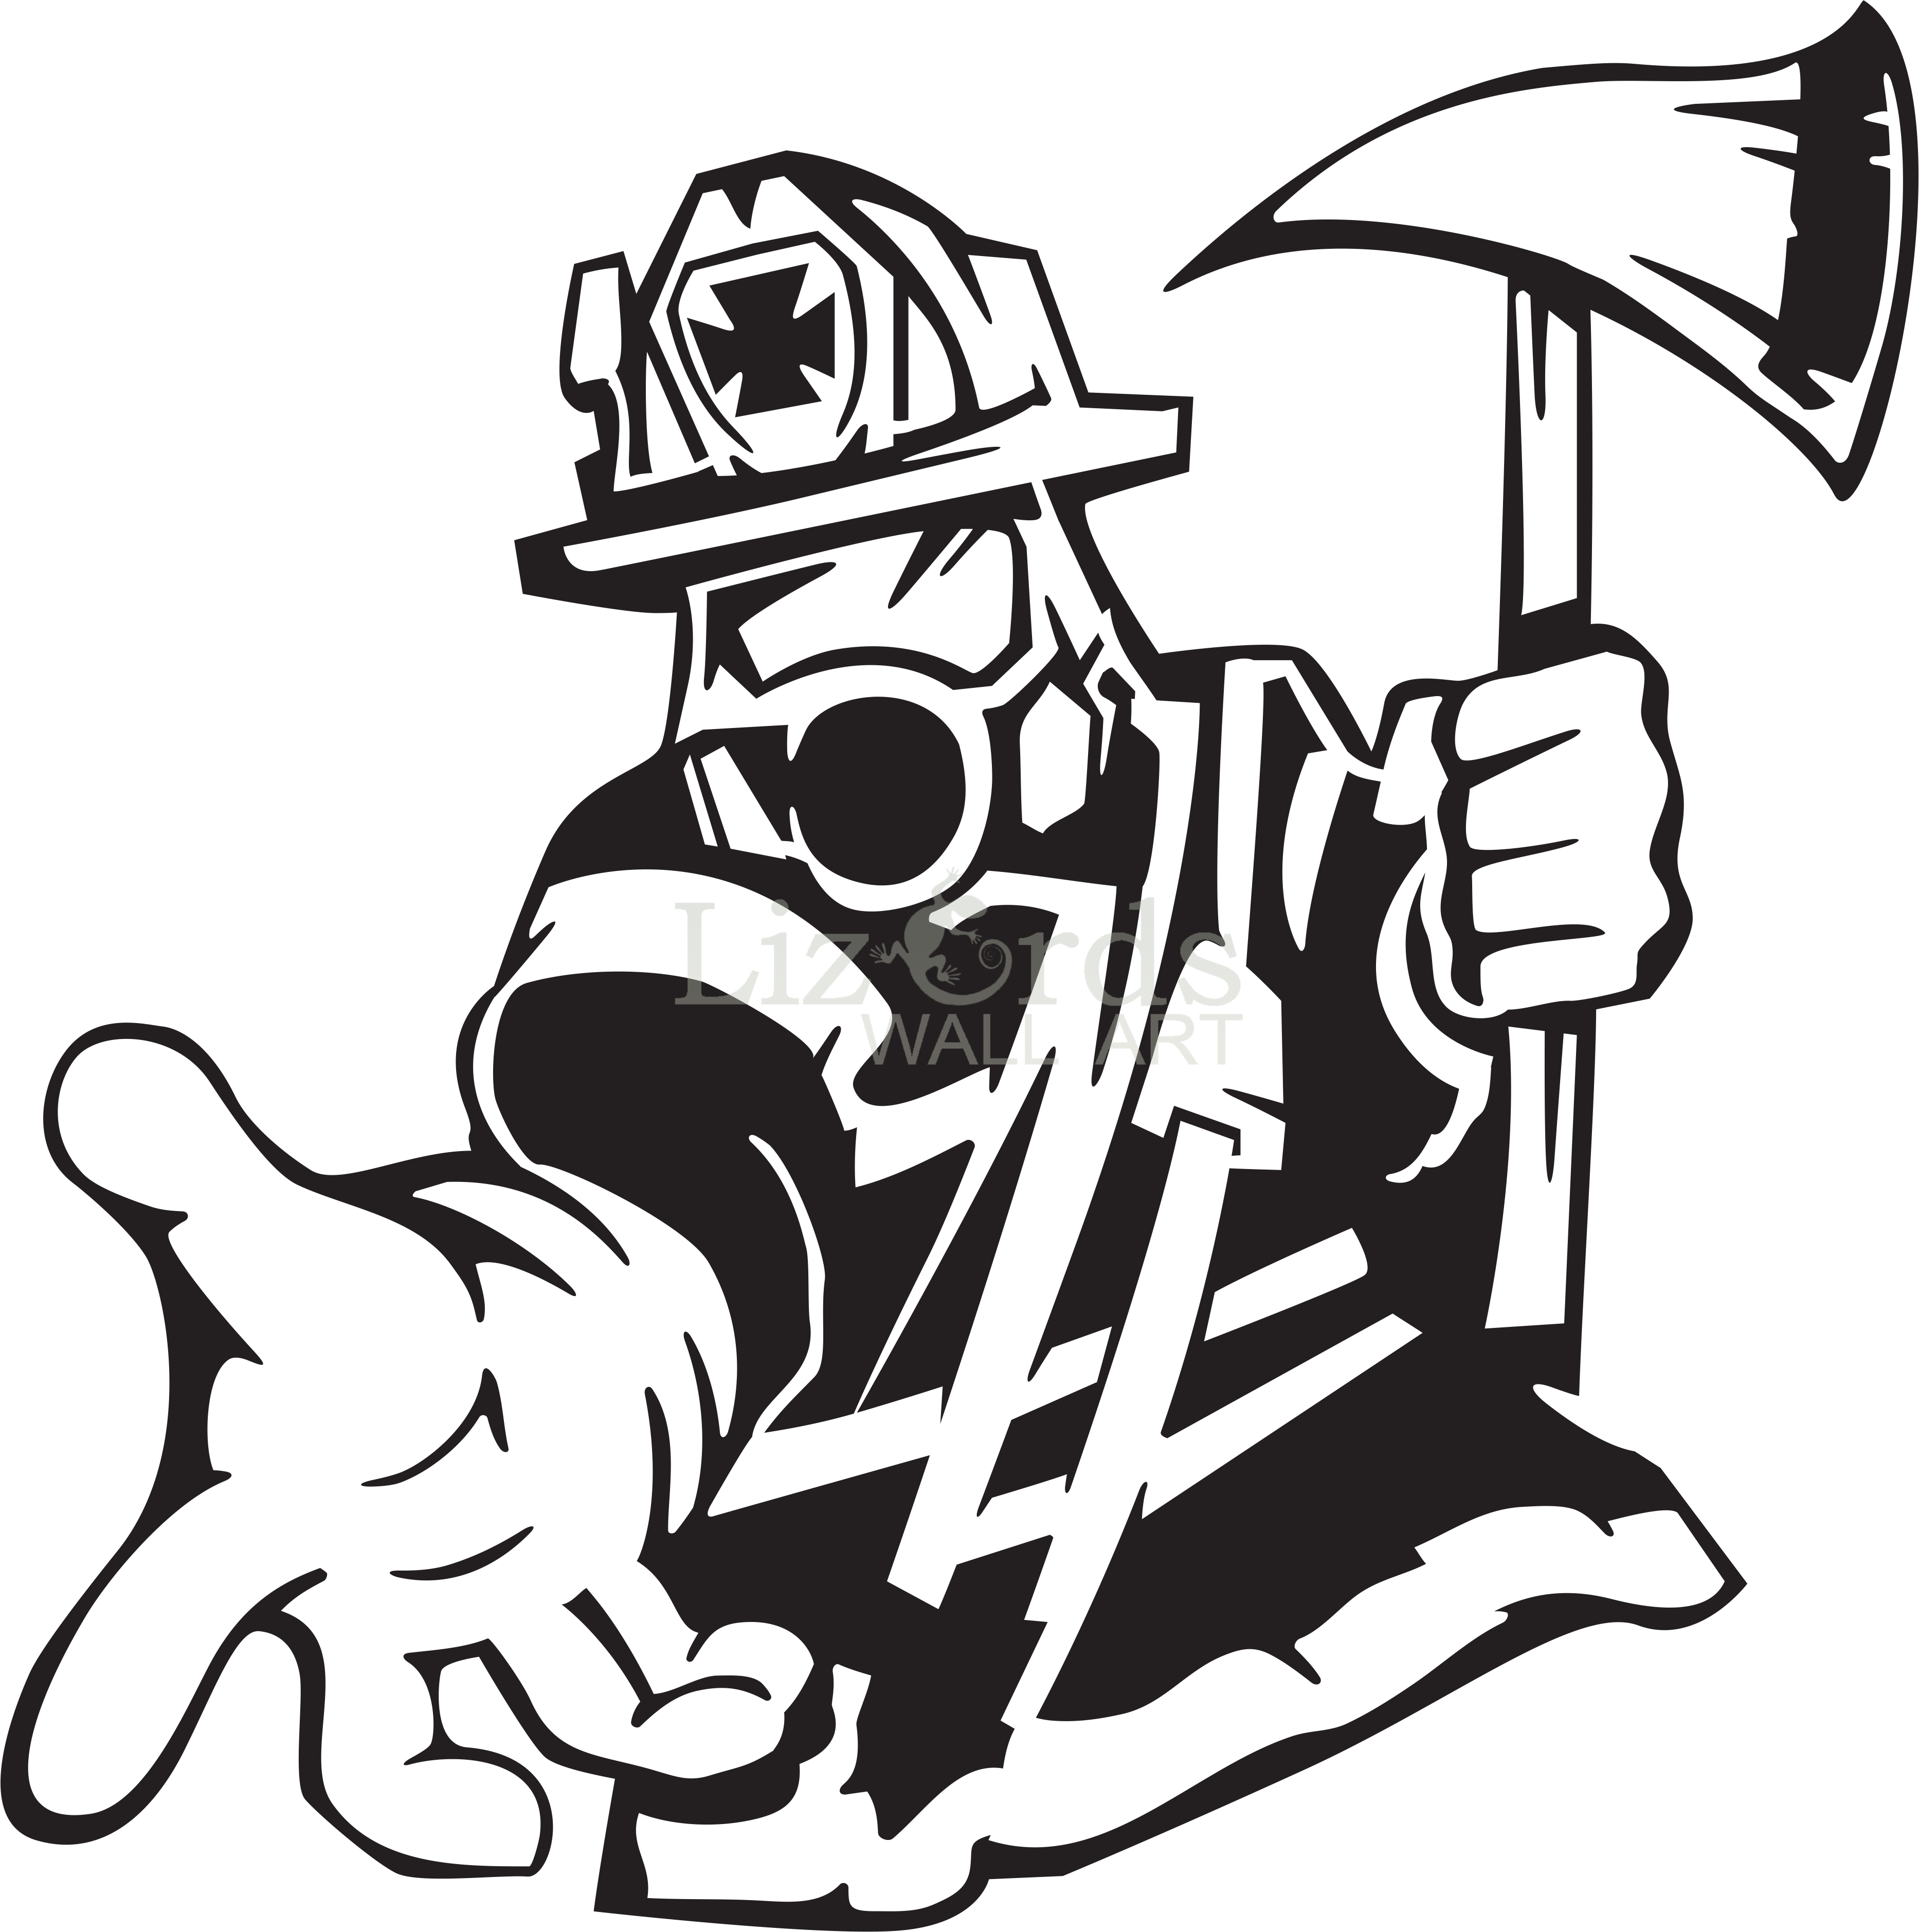 Firefighter Text Sticker Line Art Silhouette Fireman Png Download 3732 3758...